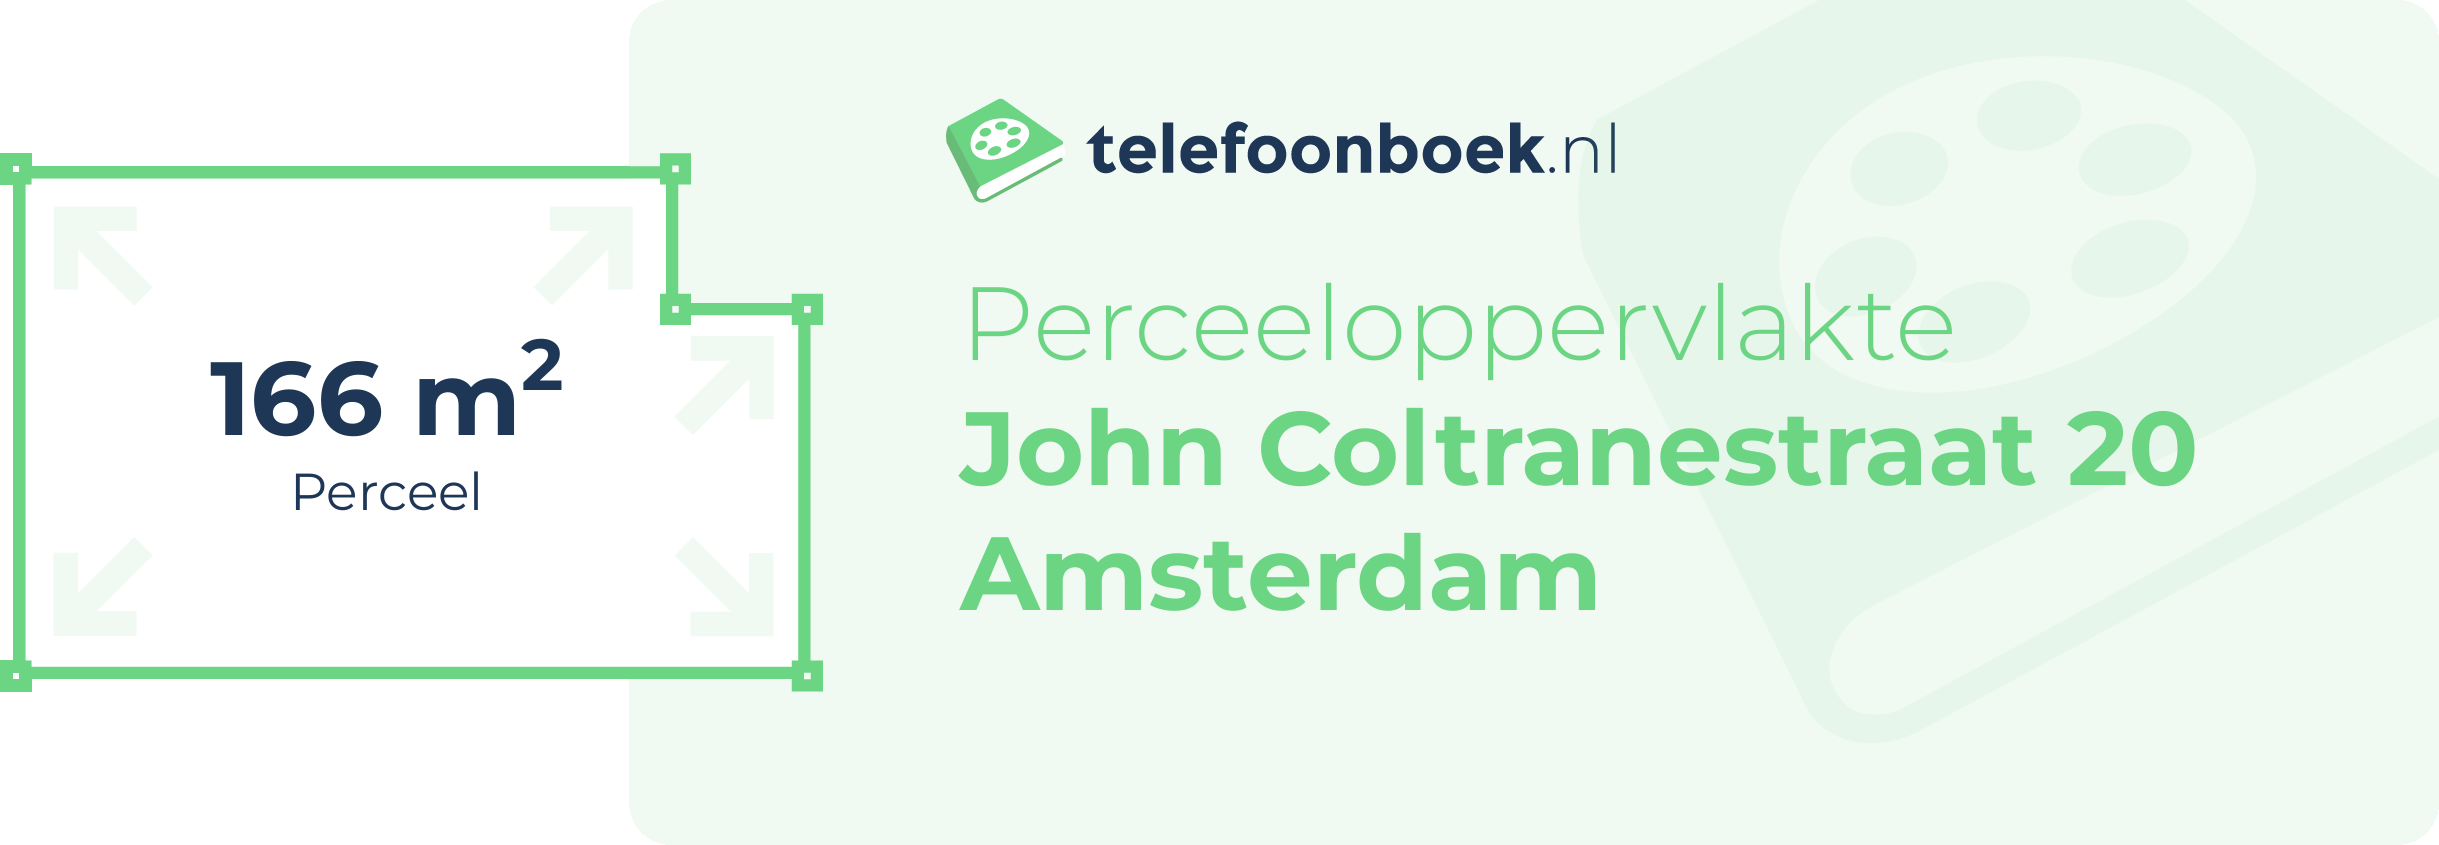 Perceeloppervlakte John Coltranestraat 20 Amsterdam